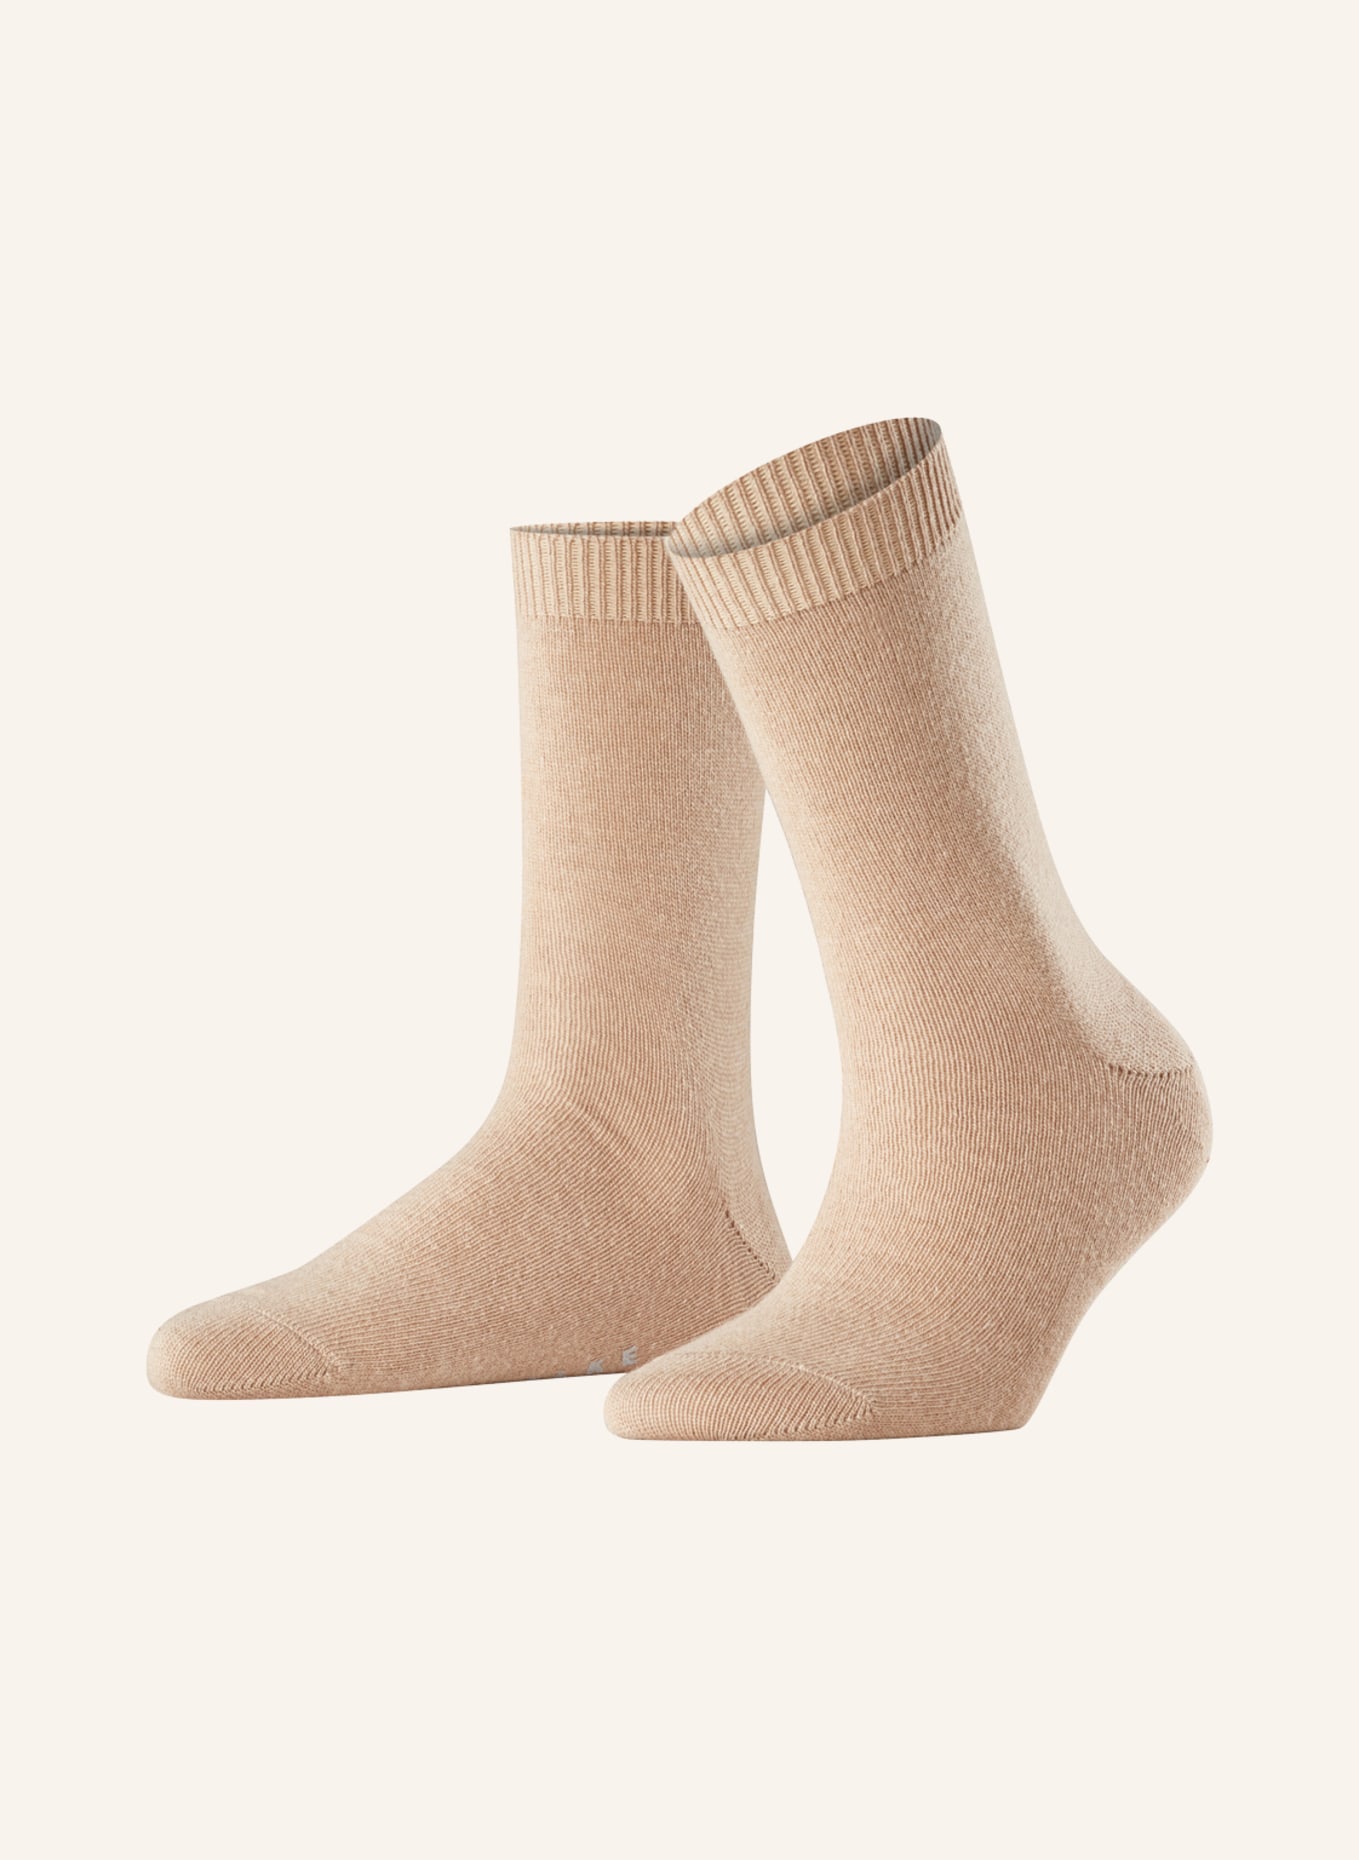 FALKE Socken COSY WOOL mit Merinowolle , Farbe: 4220 CAMEL (Bild 1)